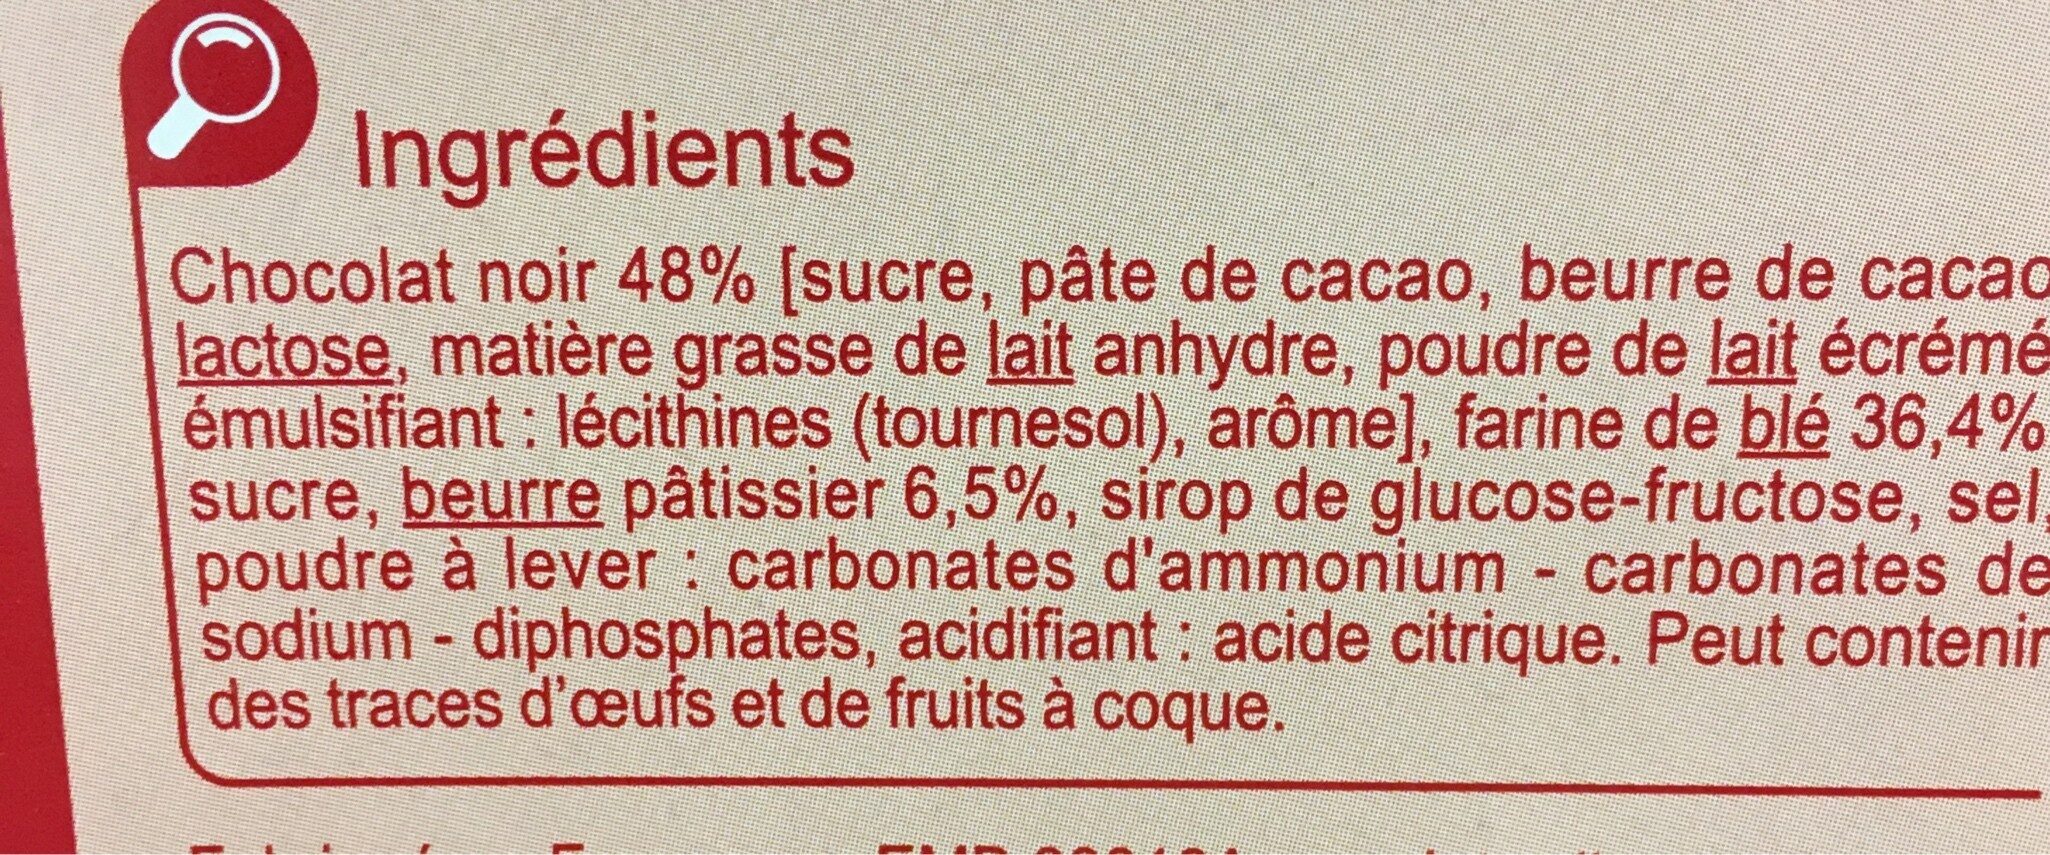 Les Tablettes CHOCOLAT NOIR - Ingrédients